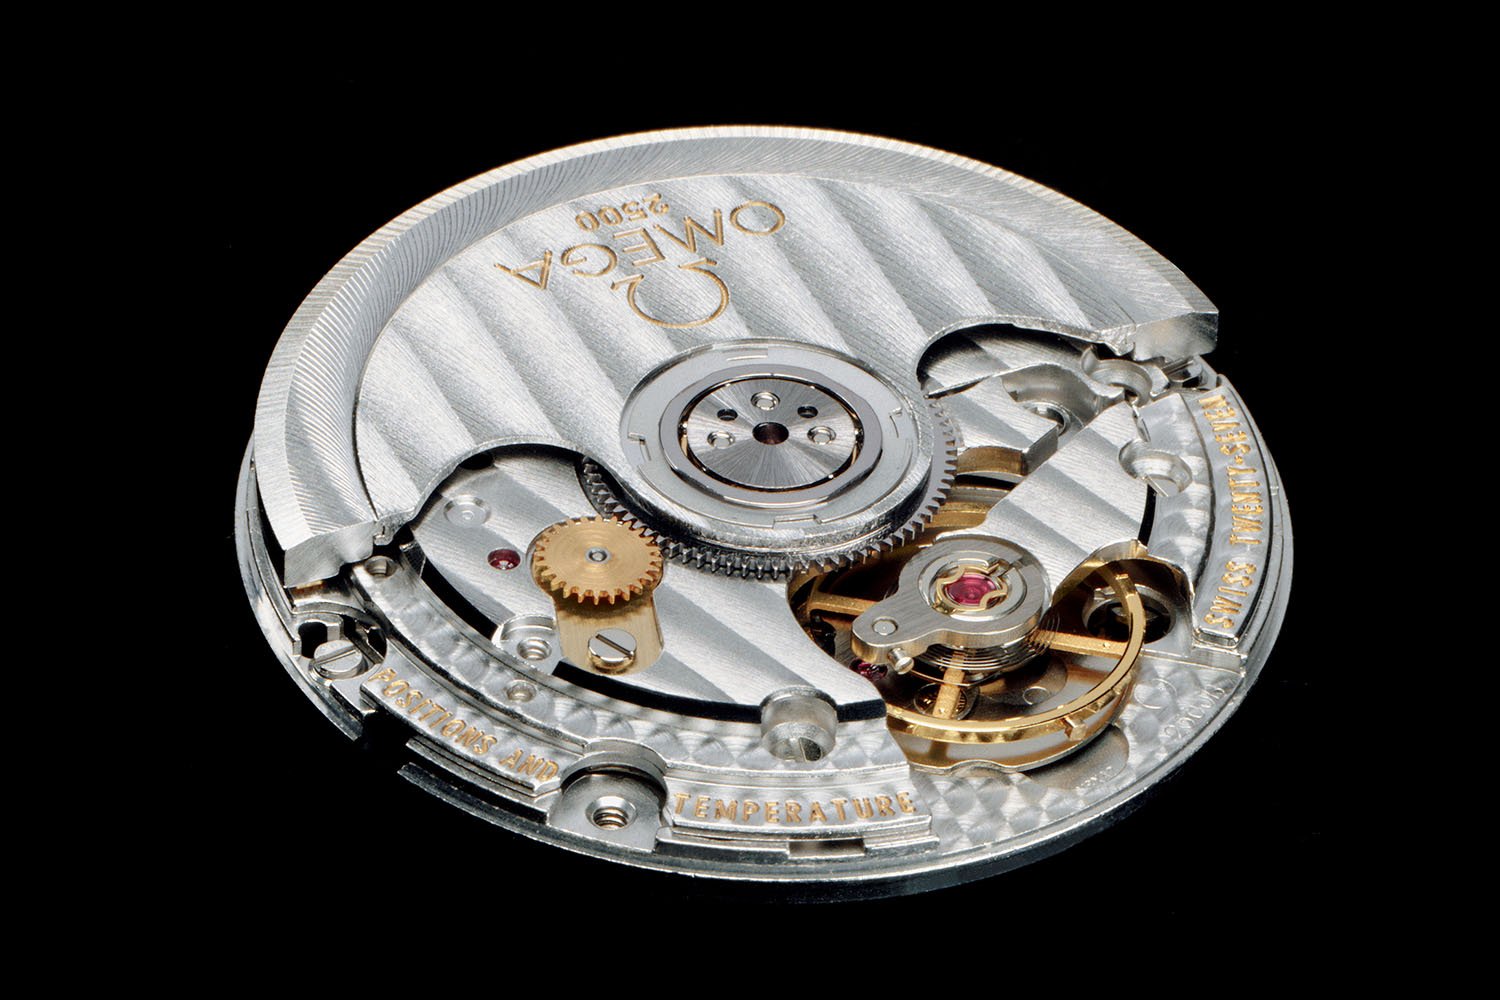 Reloj automático Radiant fabricado en Suiza en los años 60-70 para